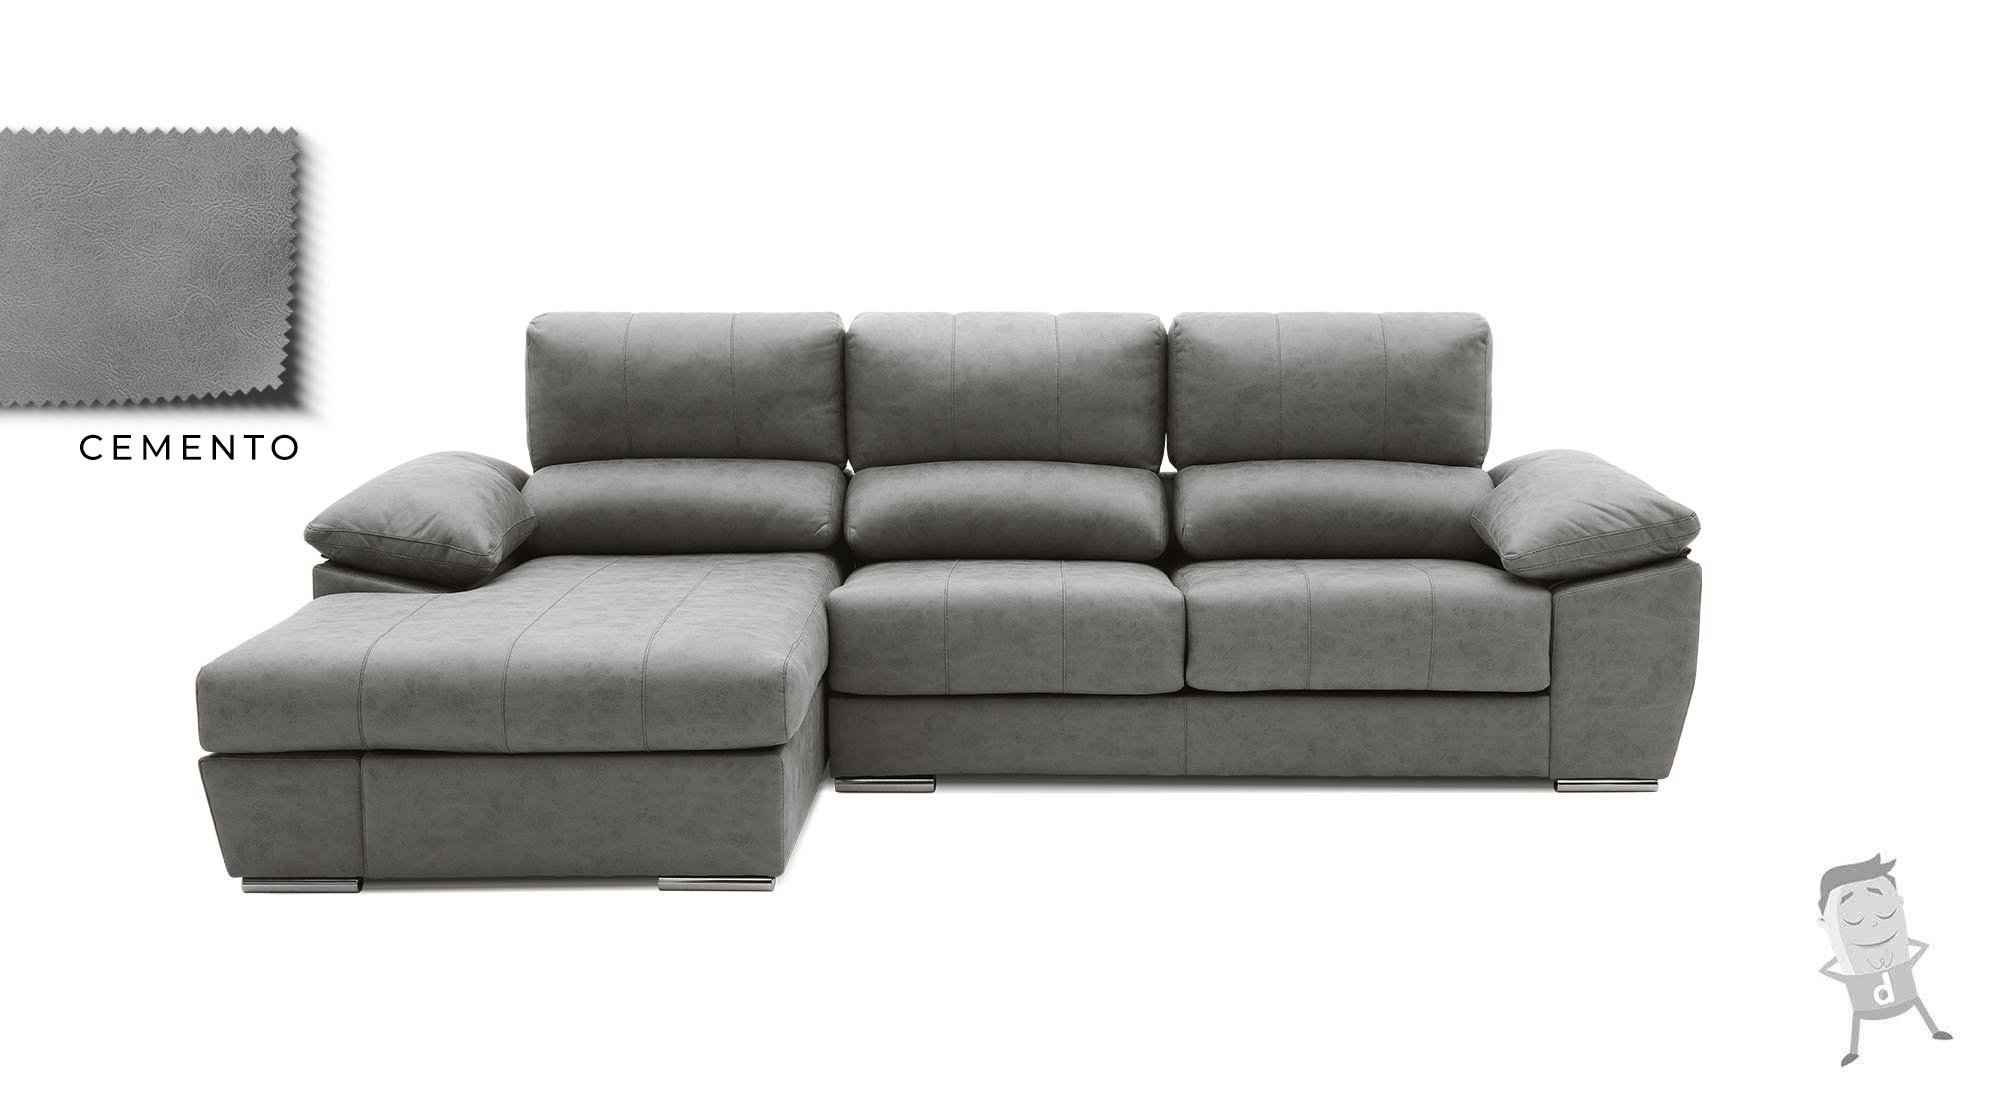 sofá-chaise-longue-lucelia-cemento